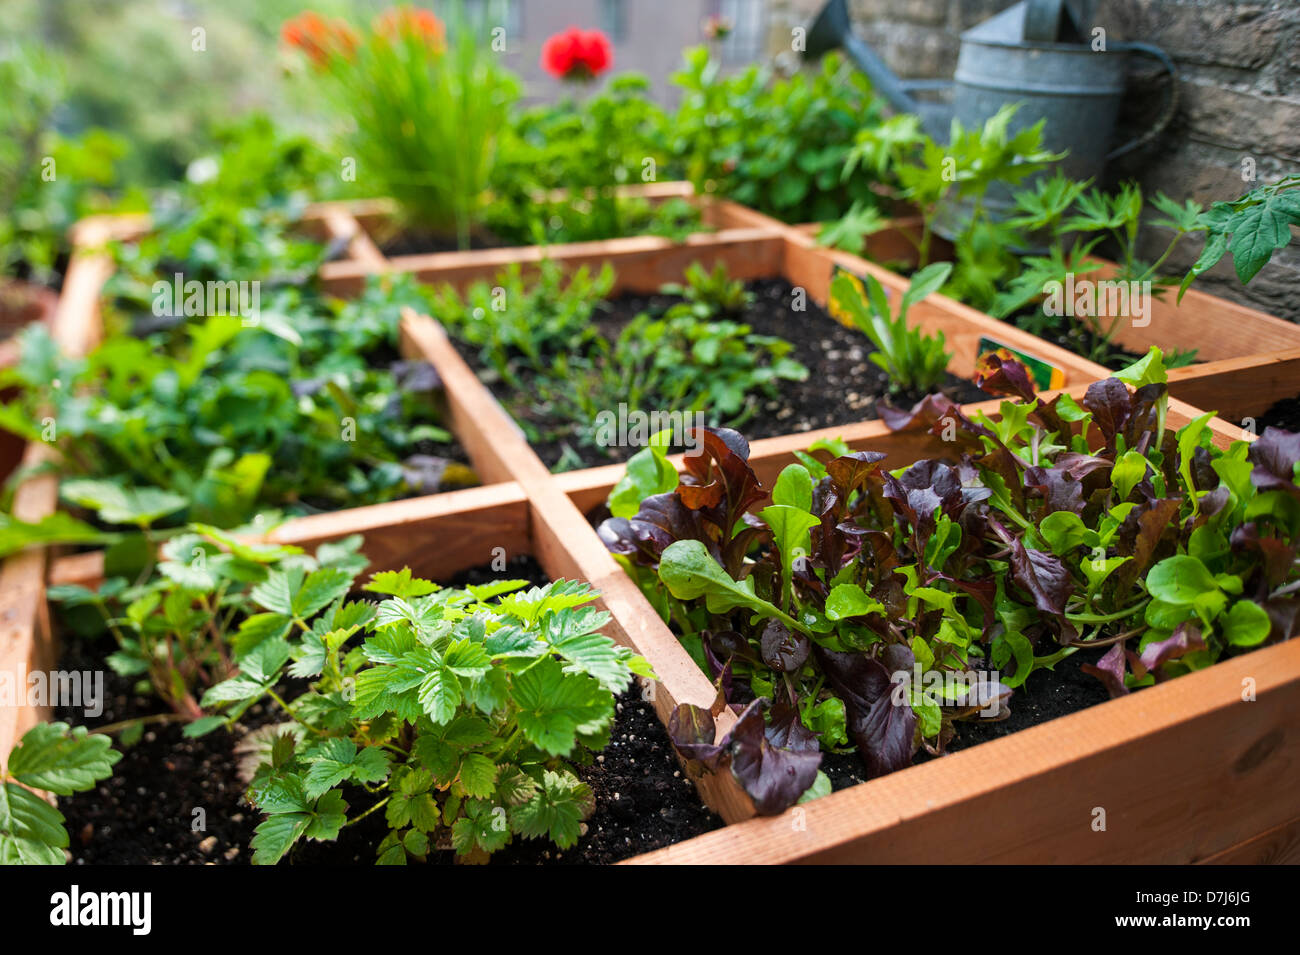 Pied carré par jardinage planter des fleurs, des herbes et des légumes en boîte bois sur balcon Banque D'Images